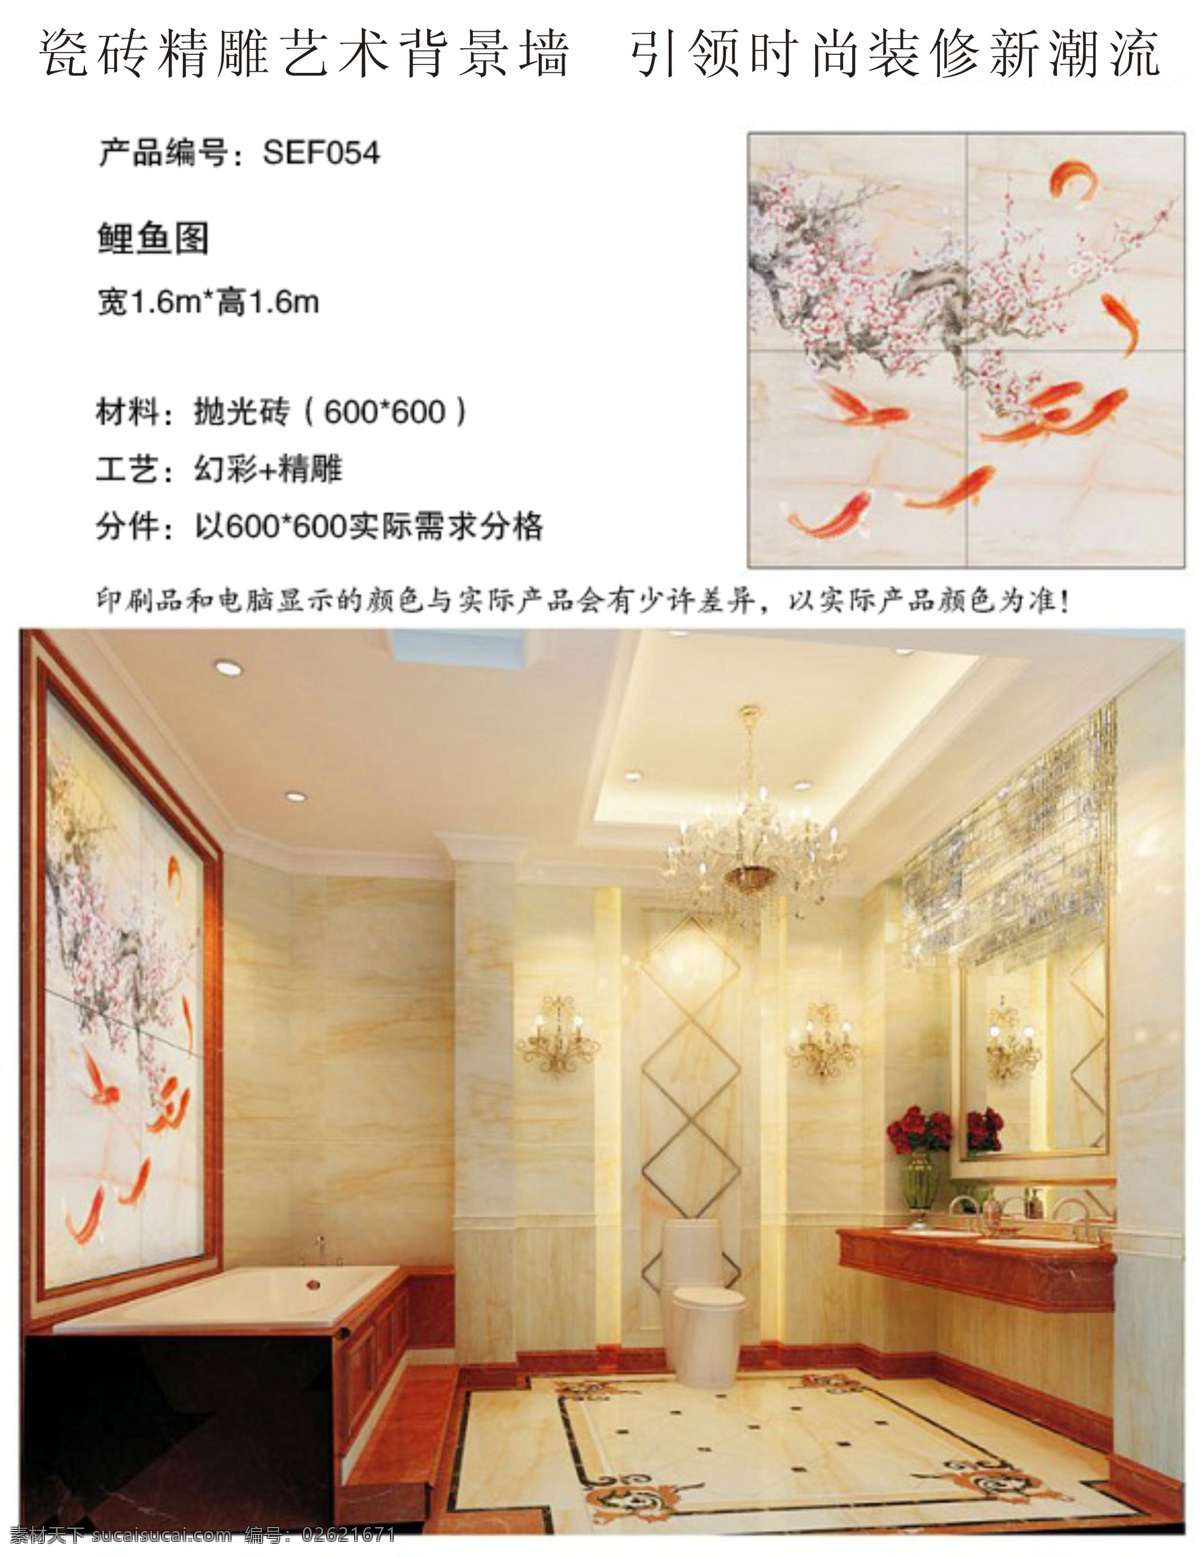 中式 背景 墙 鲤鱼 图 鲤鱼图 背景墙 效果图 白色